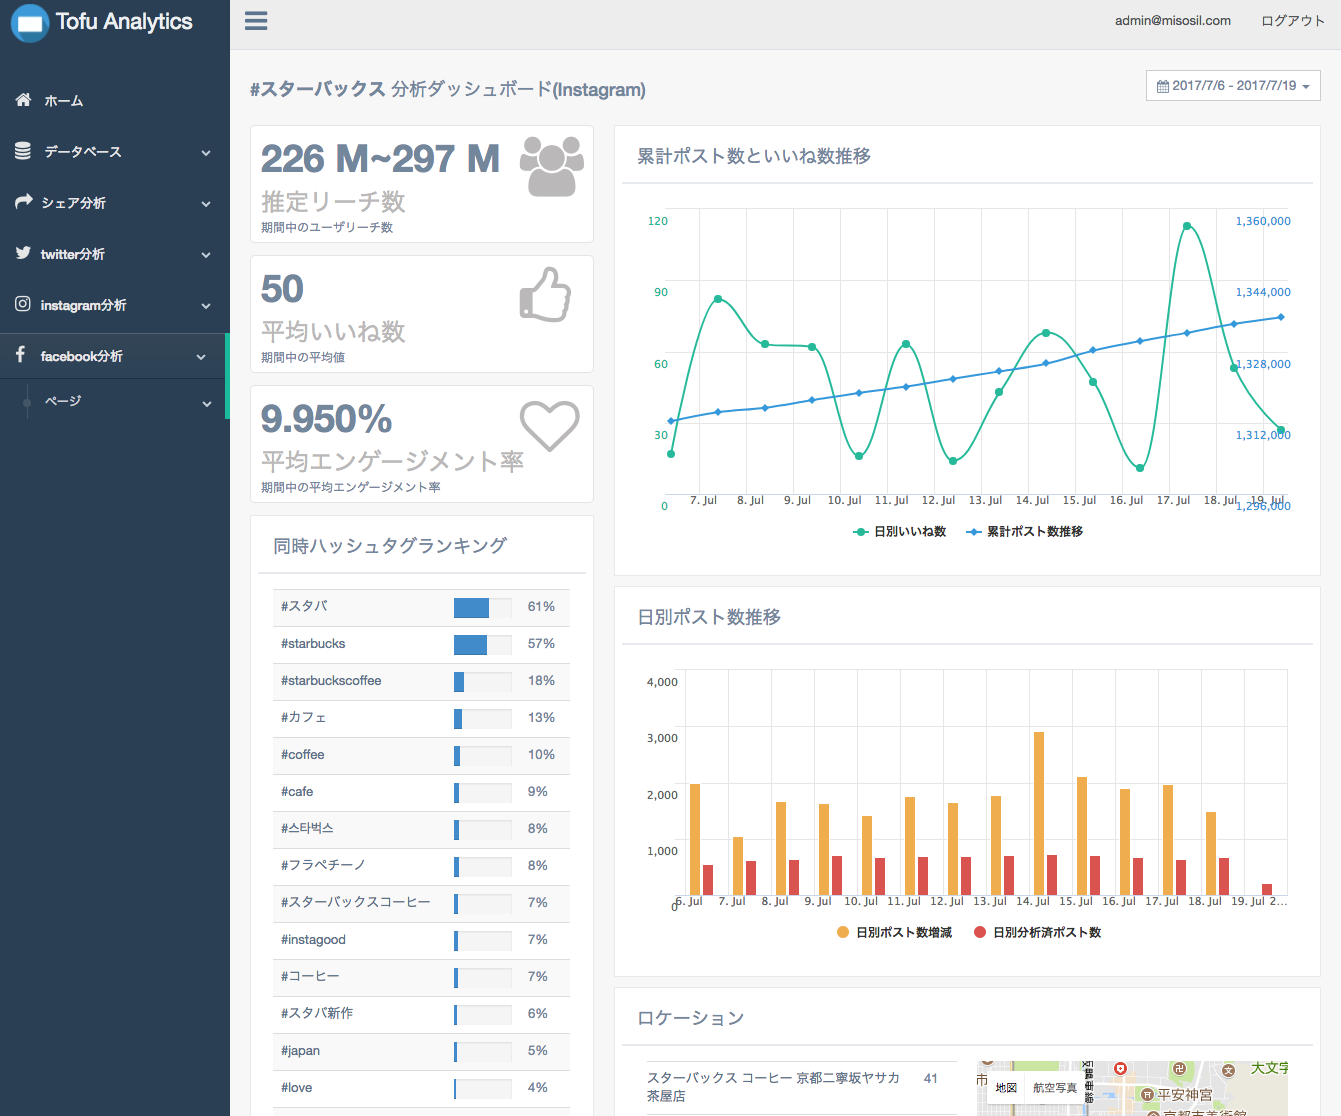 Tofu Analytics data dashboard